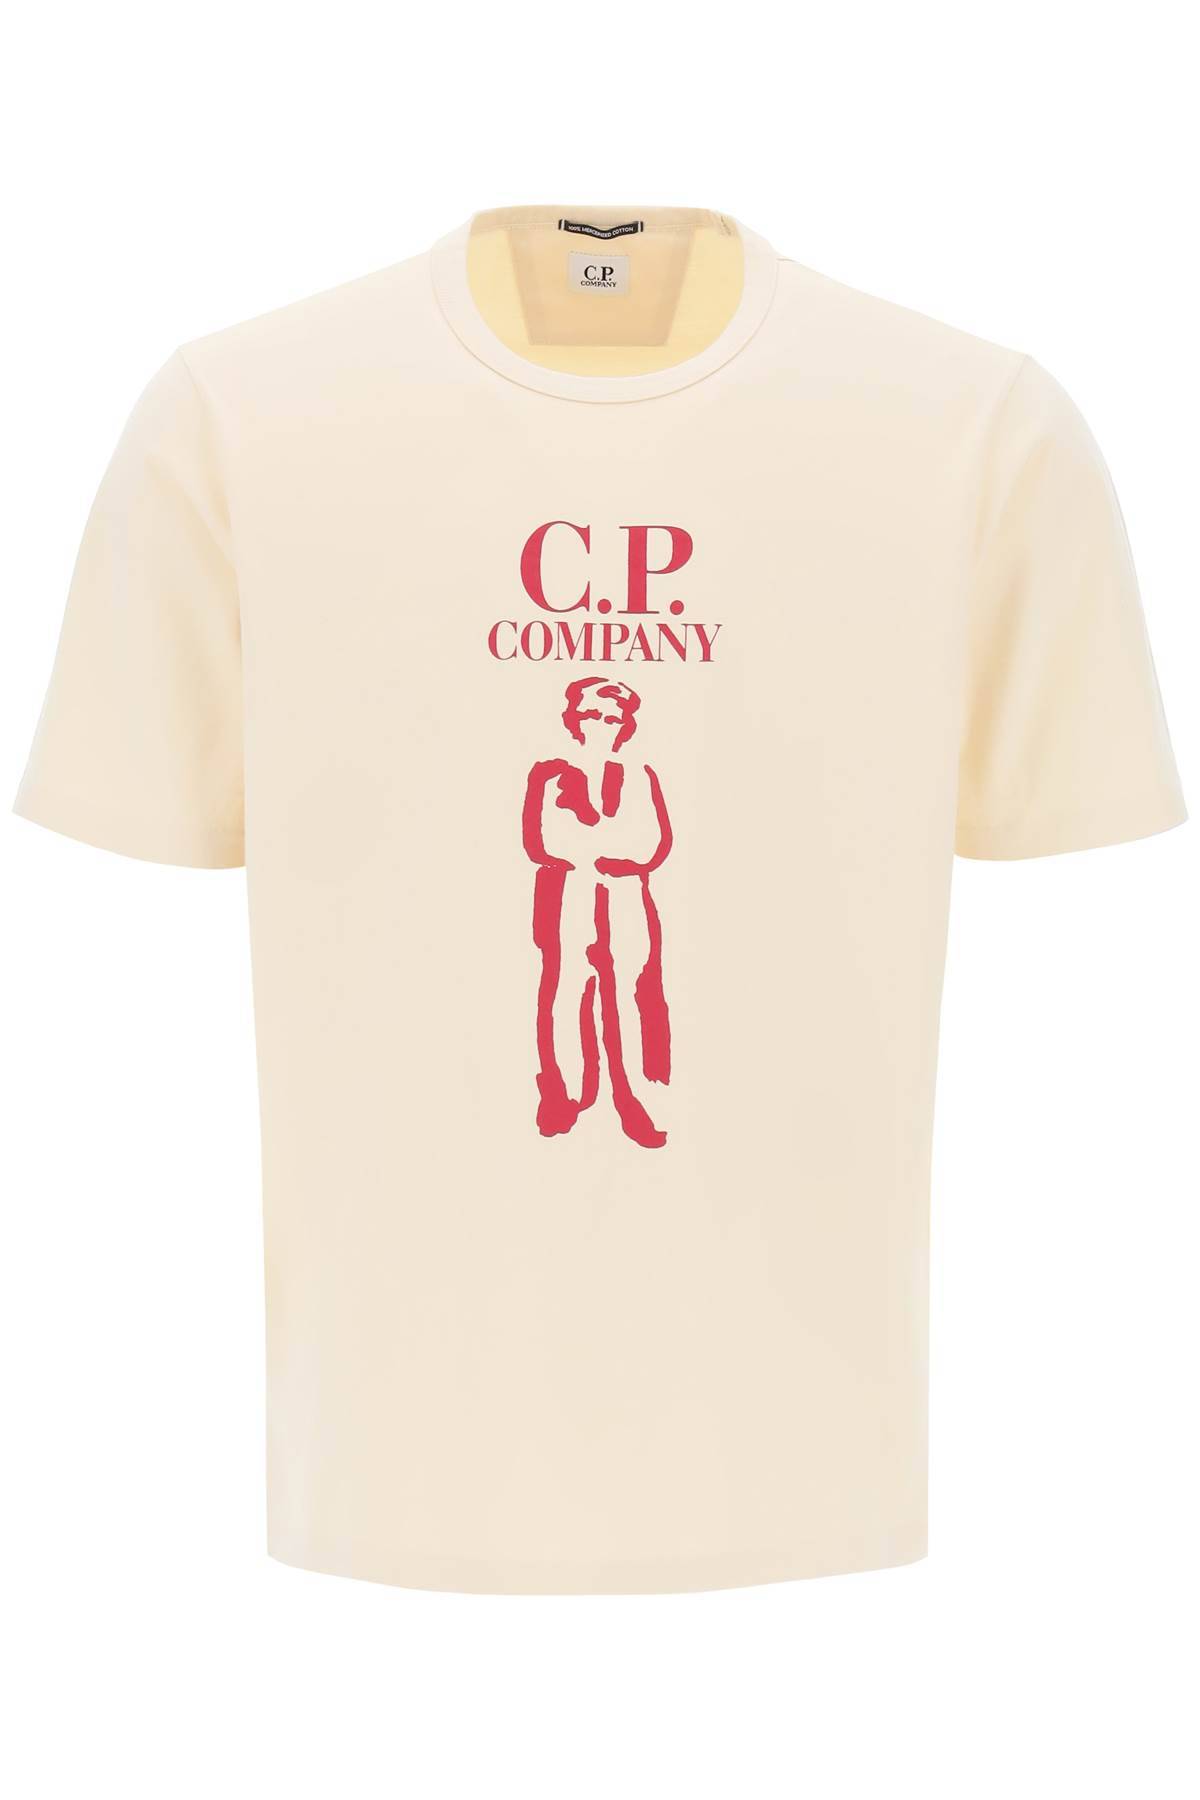 CP COMPANY CP COMPANY printed british sailor t-shirt